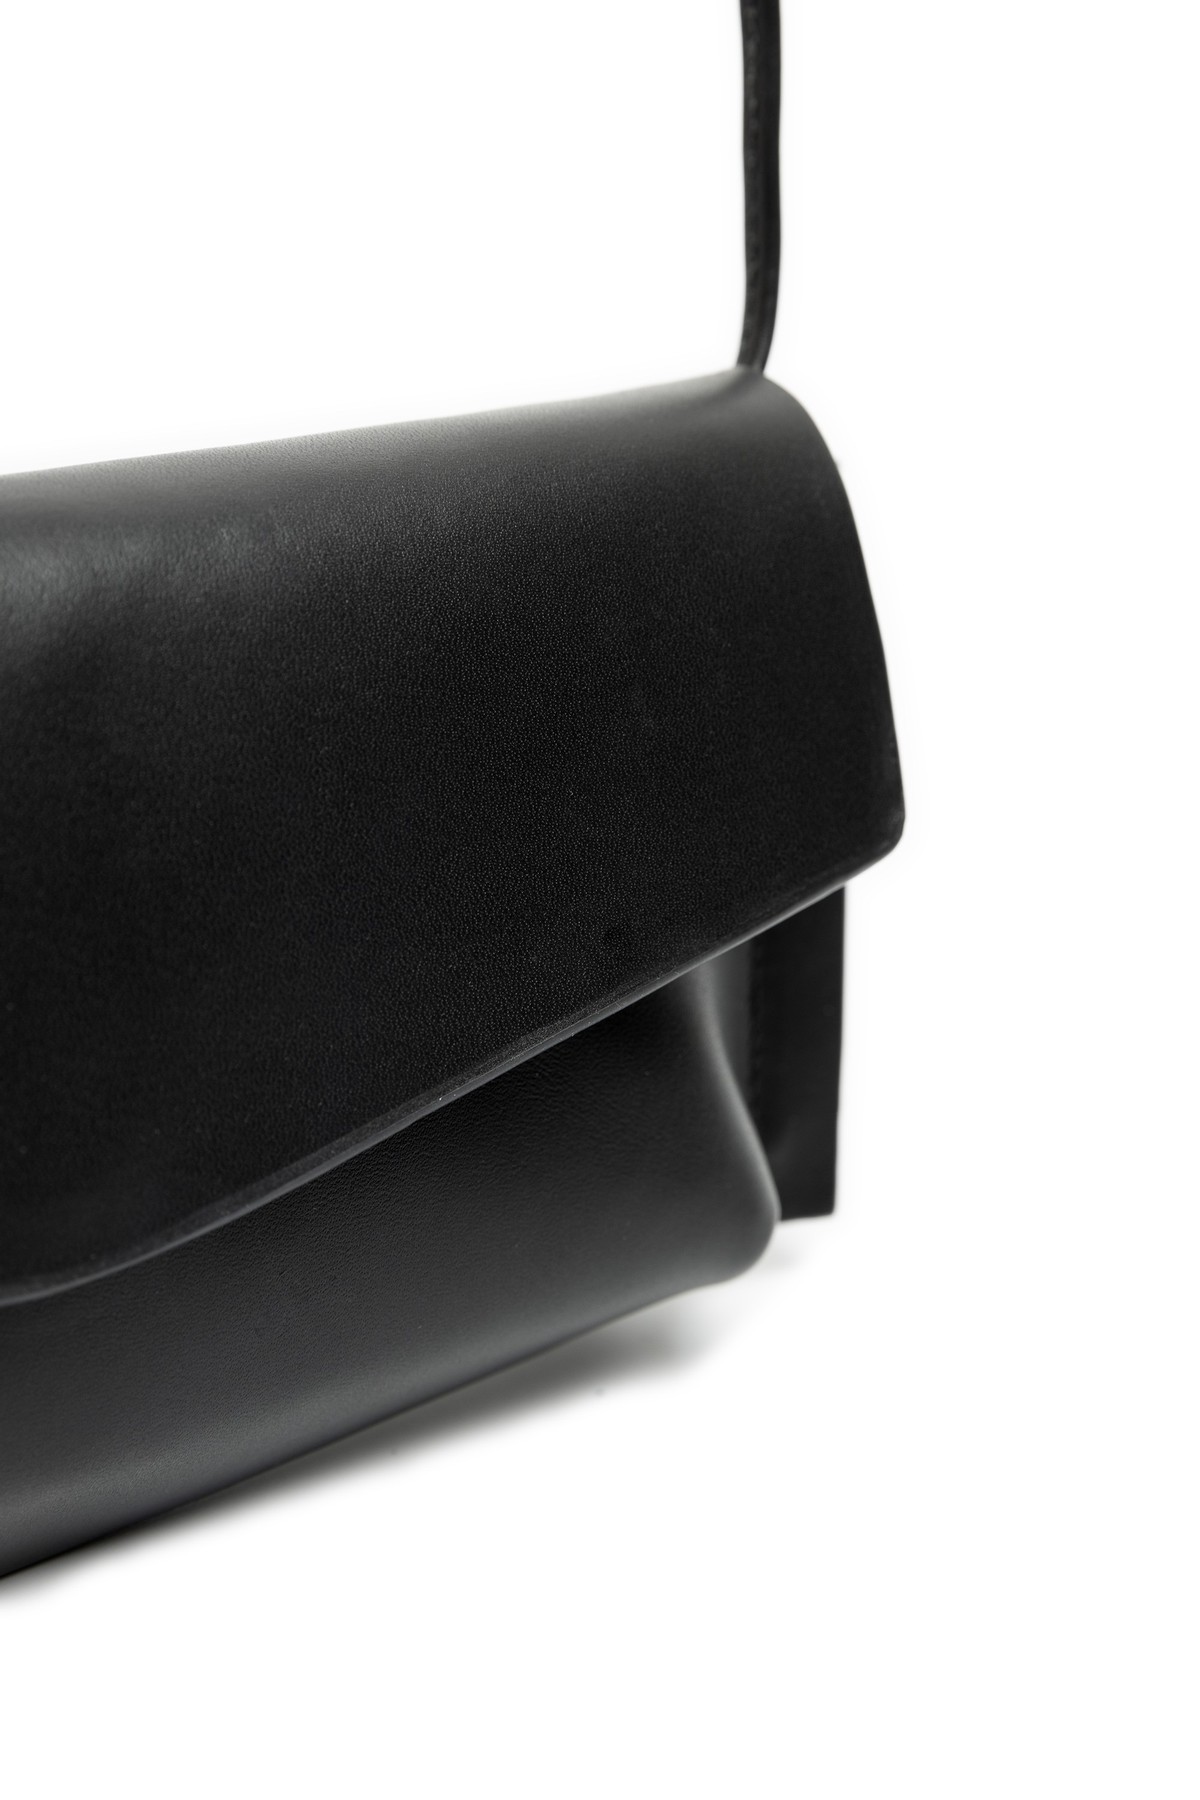 bolsa clutch em couro com alça | clutch leather bag with strap